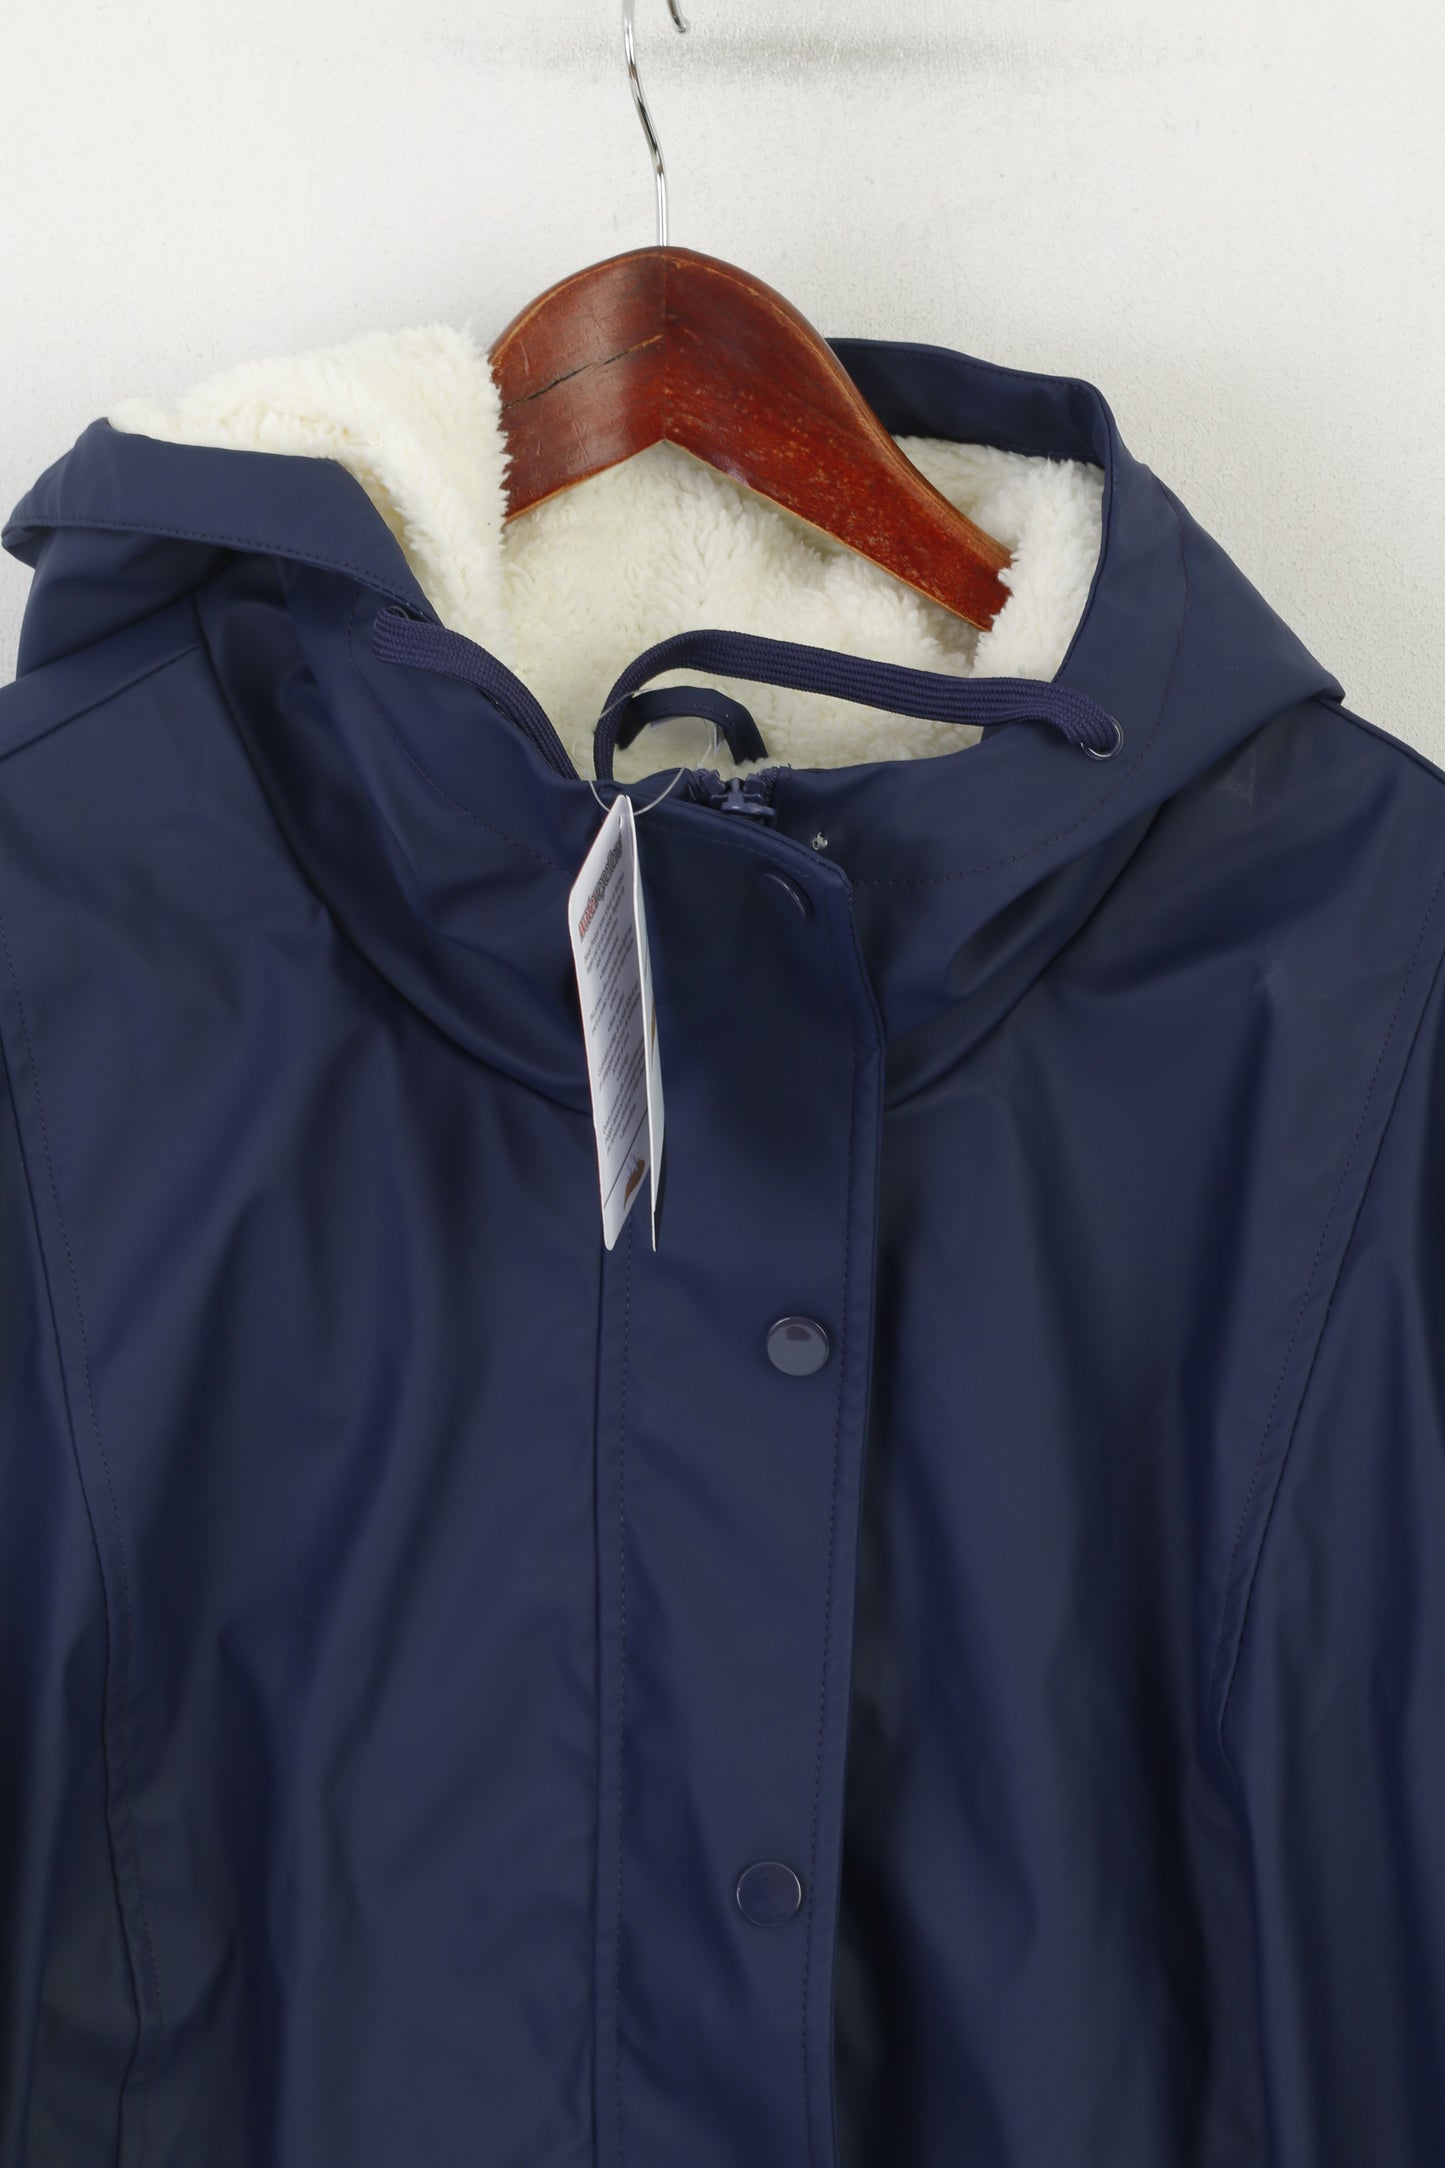 New Watterrepellent Women 22 48 XL Jacket Navy Outdoor Hooded Lined Warm Top